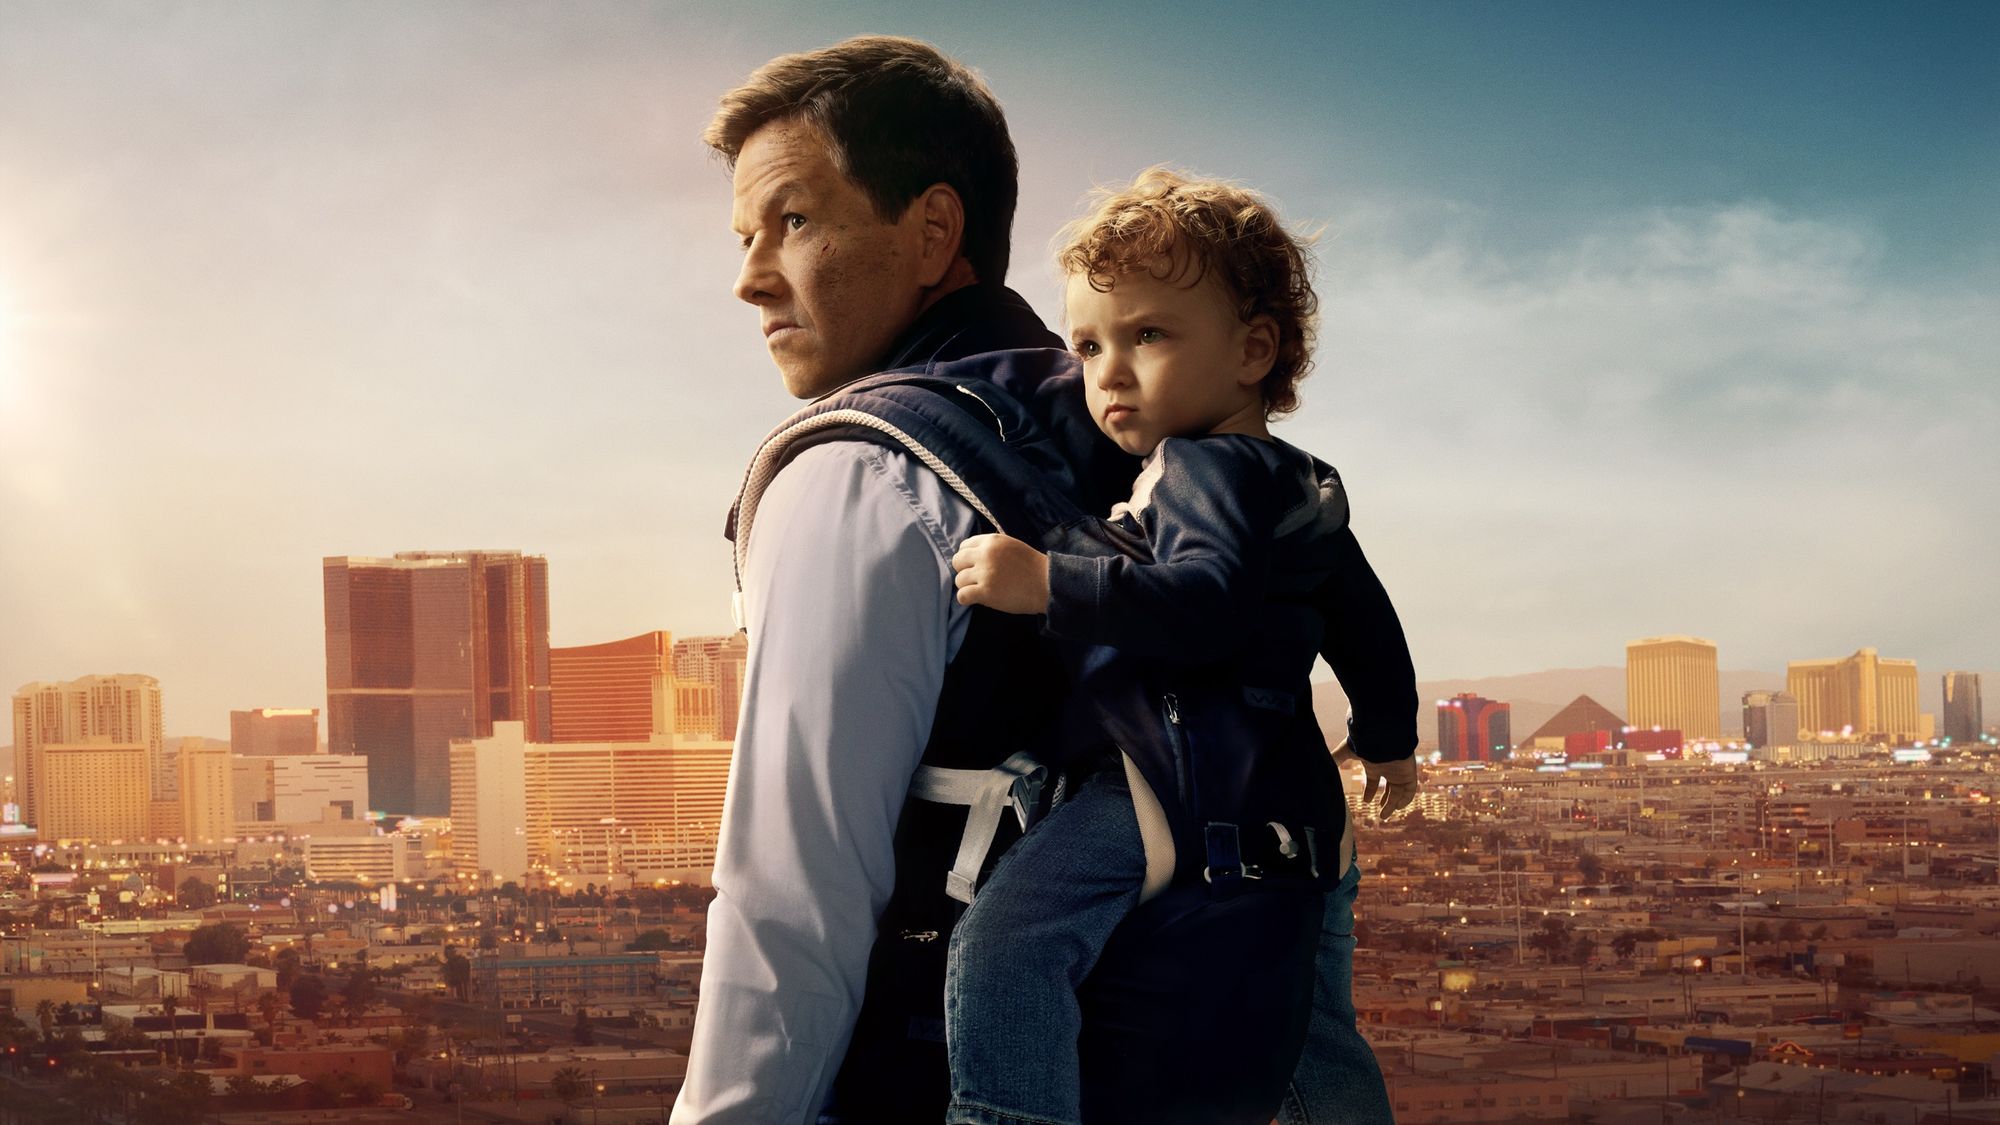 Apple выпустила трейлер комедии «Семейный план» с Марком Уолбергом и Мишель Монахан